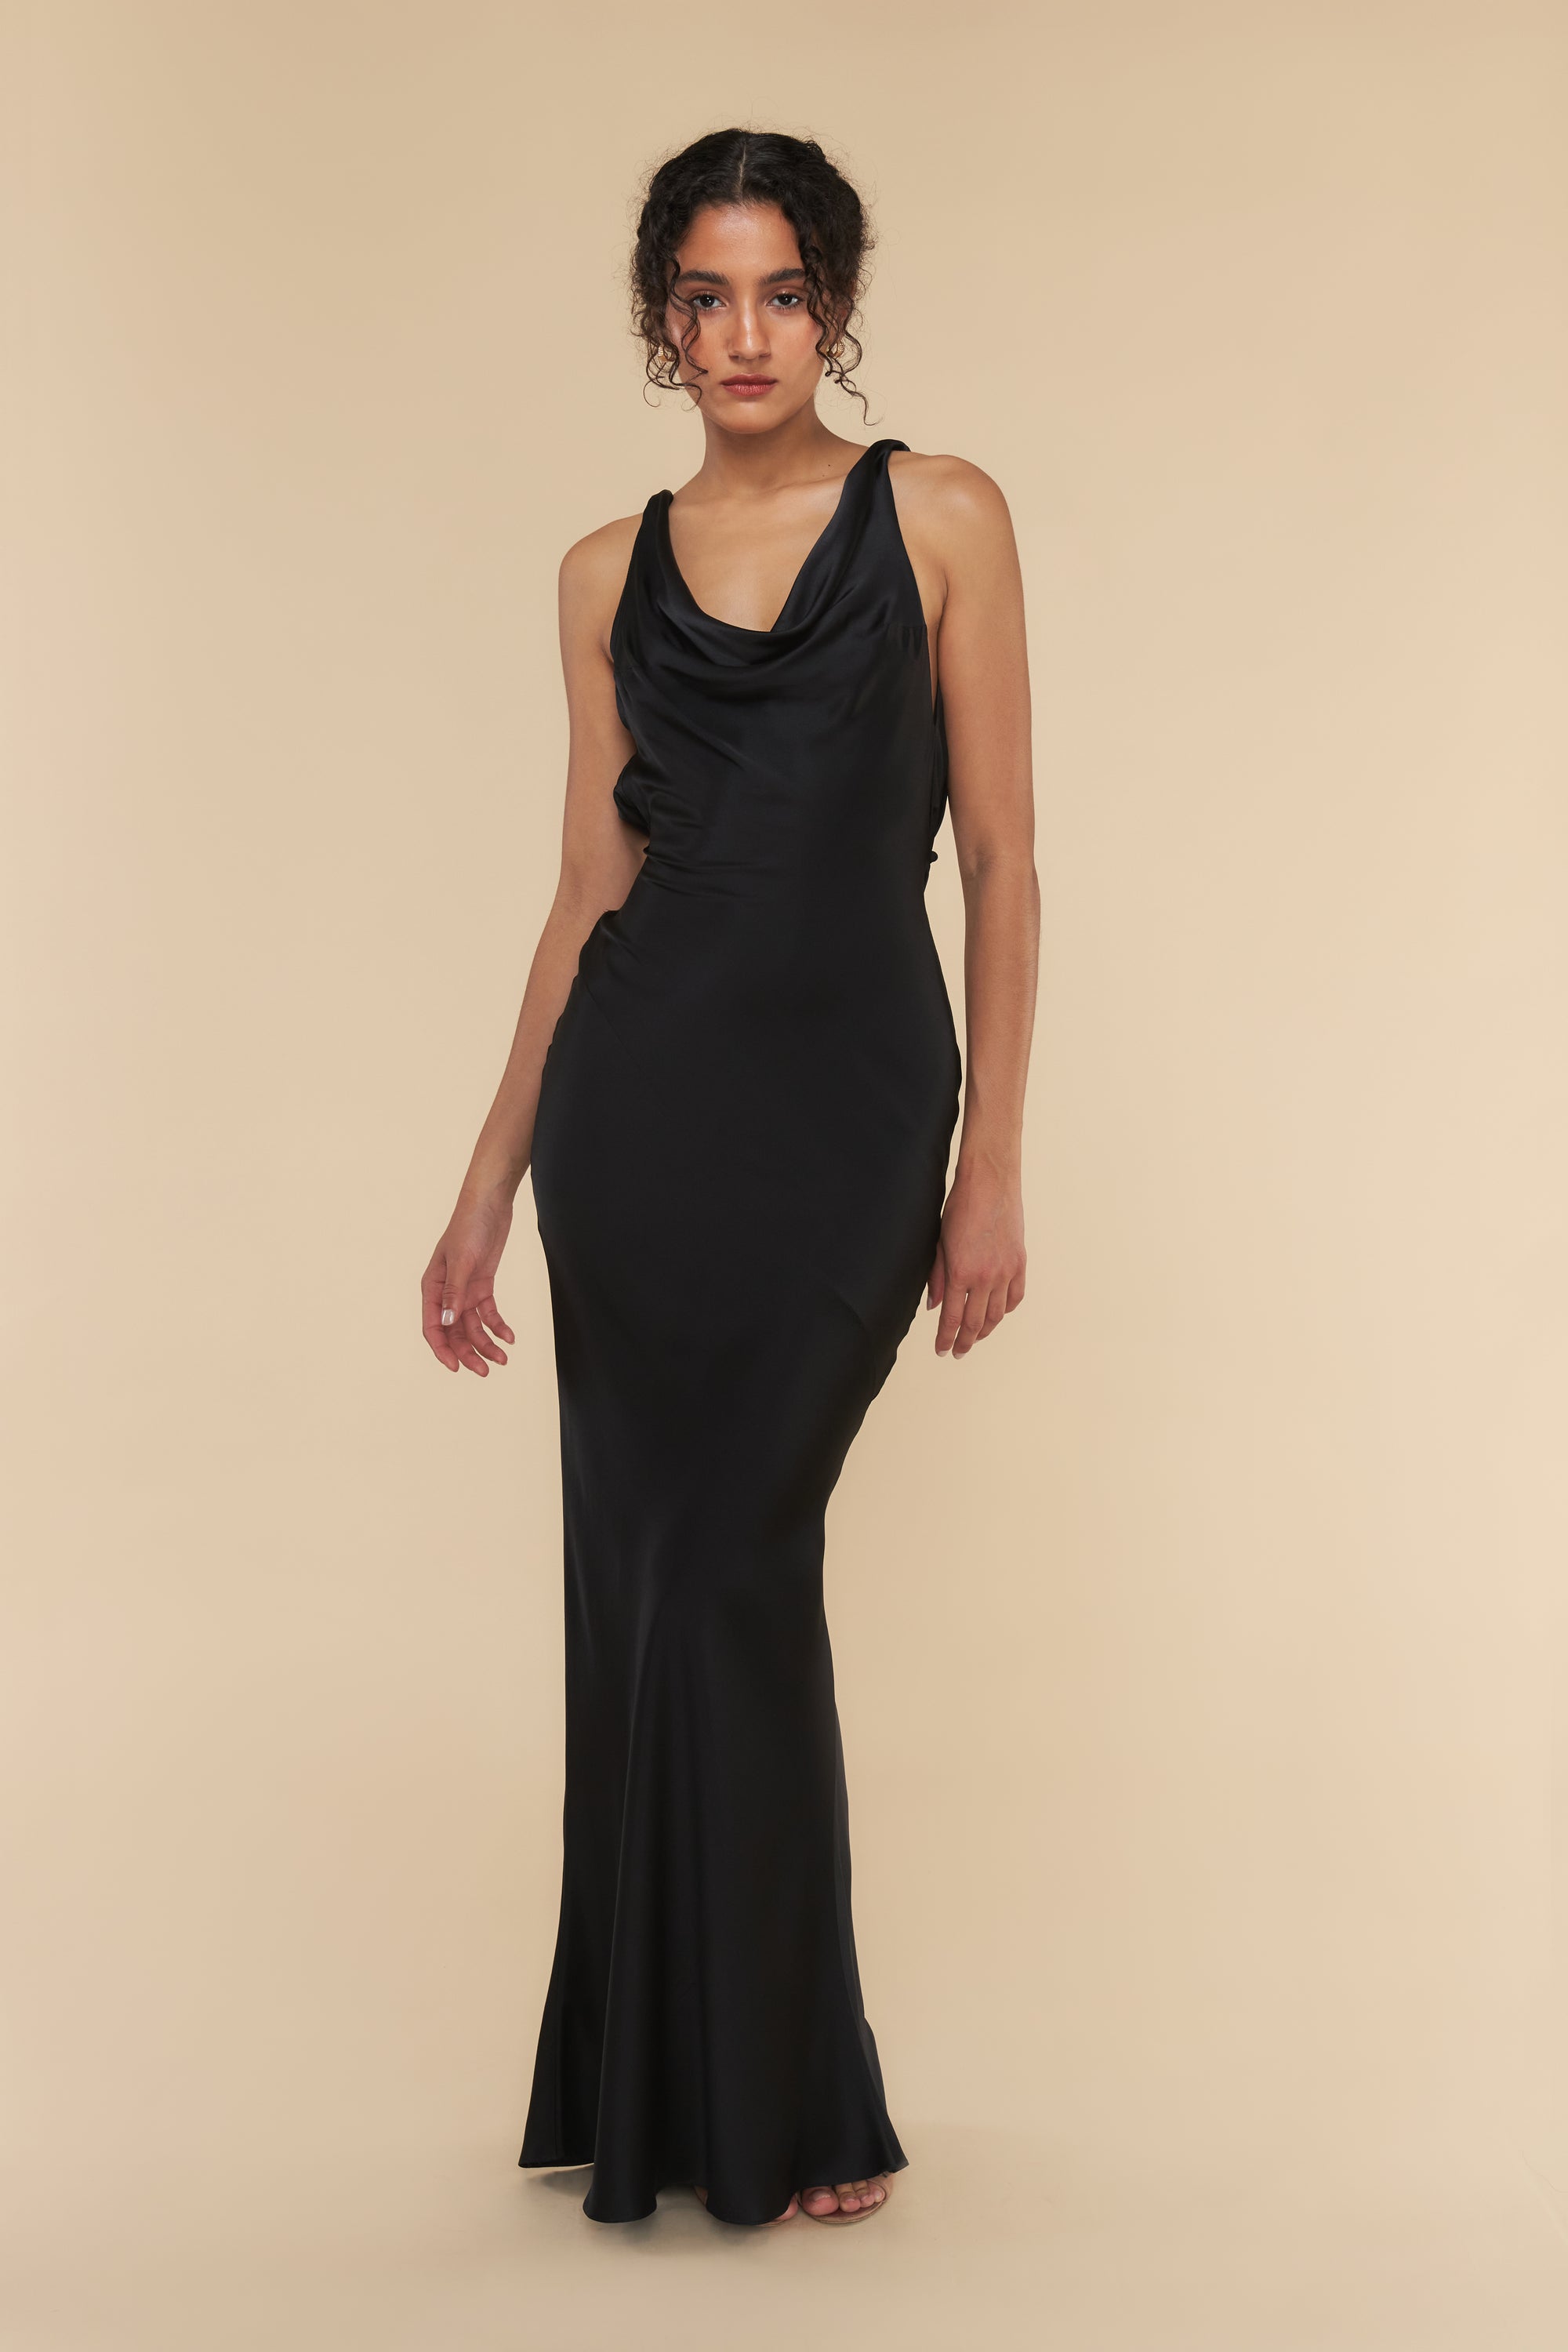 Supermodel Dress Black